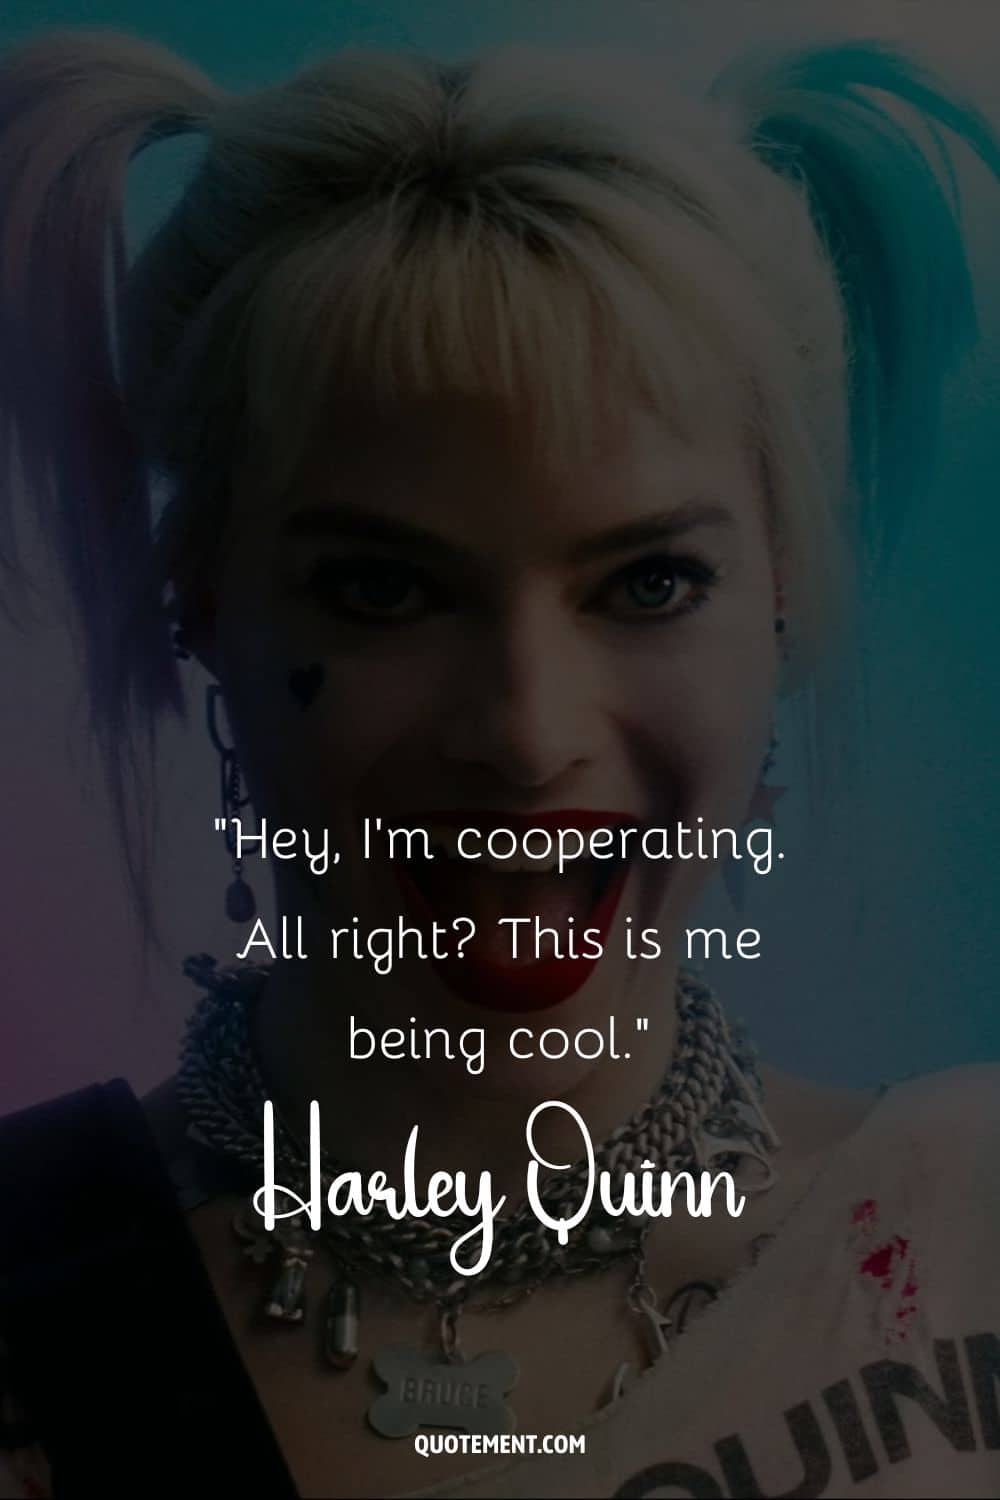 Meet Harley Quinn, Gotham's unpredictable mischief-maker